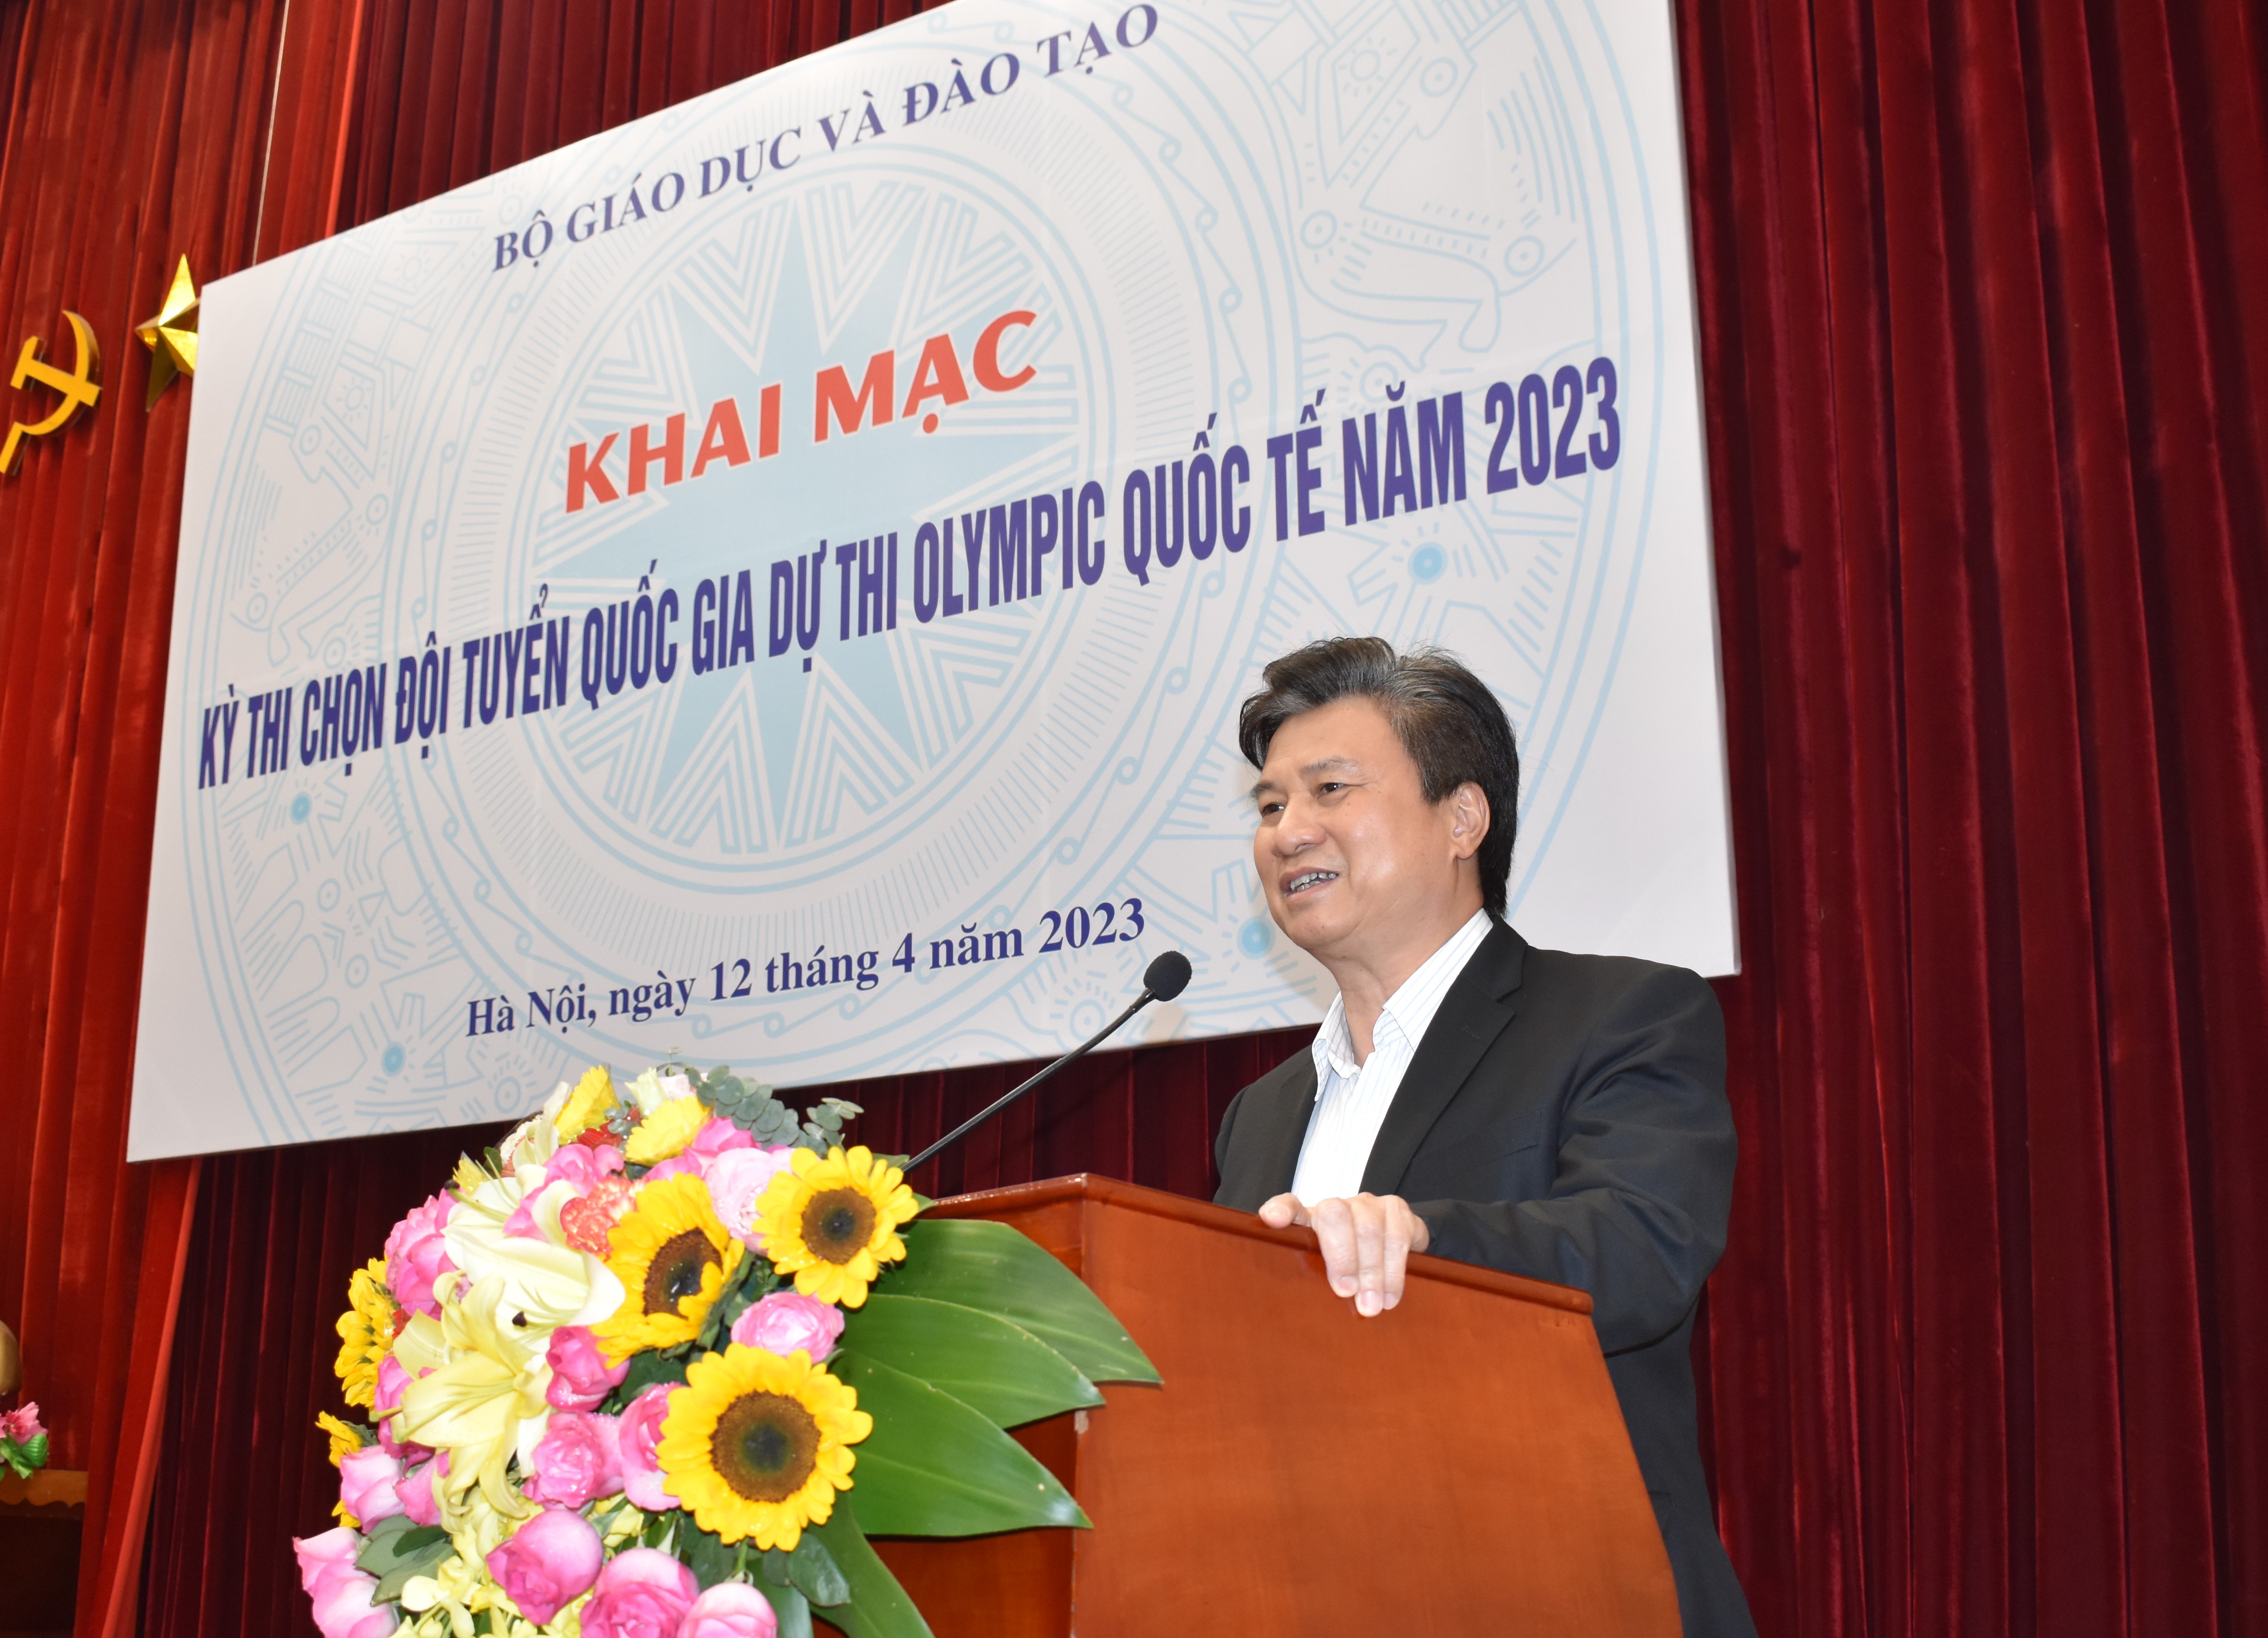 Thứ trưởng Bộ GD&ĐT Nguyễn Hữu Độ phát biểu khai mạc Kỳ thi chọn đội tuyển Olympic quốc tế năm 2023.